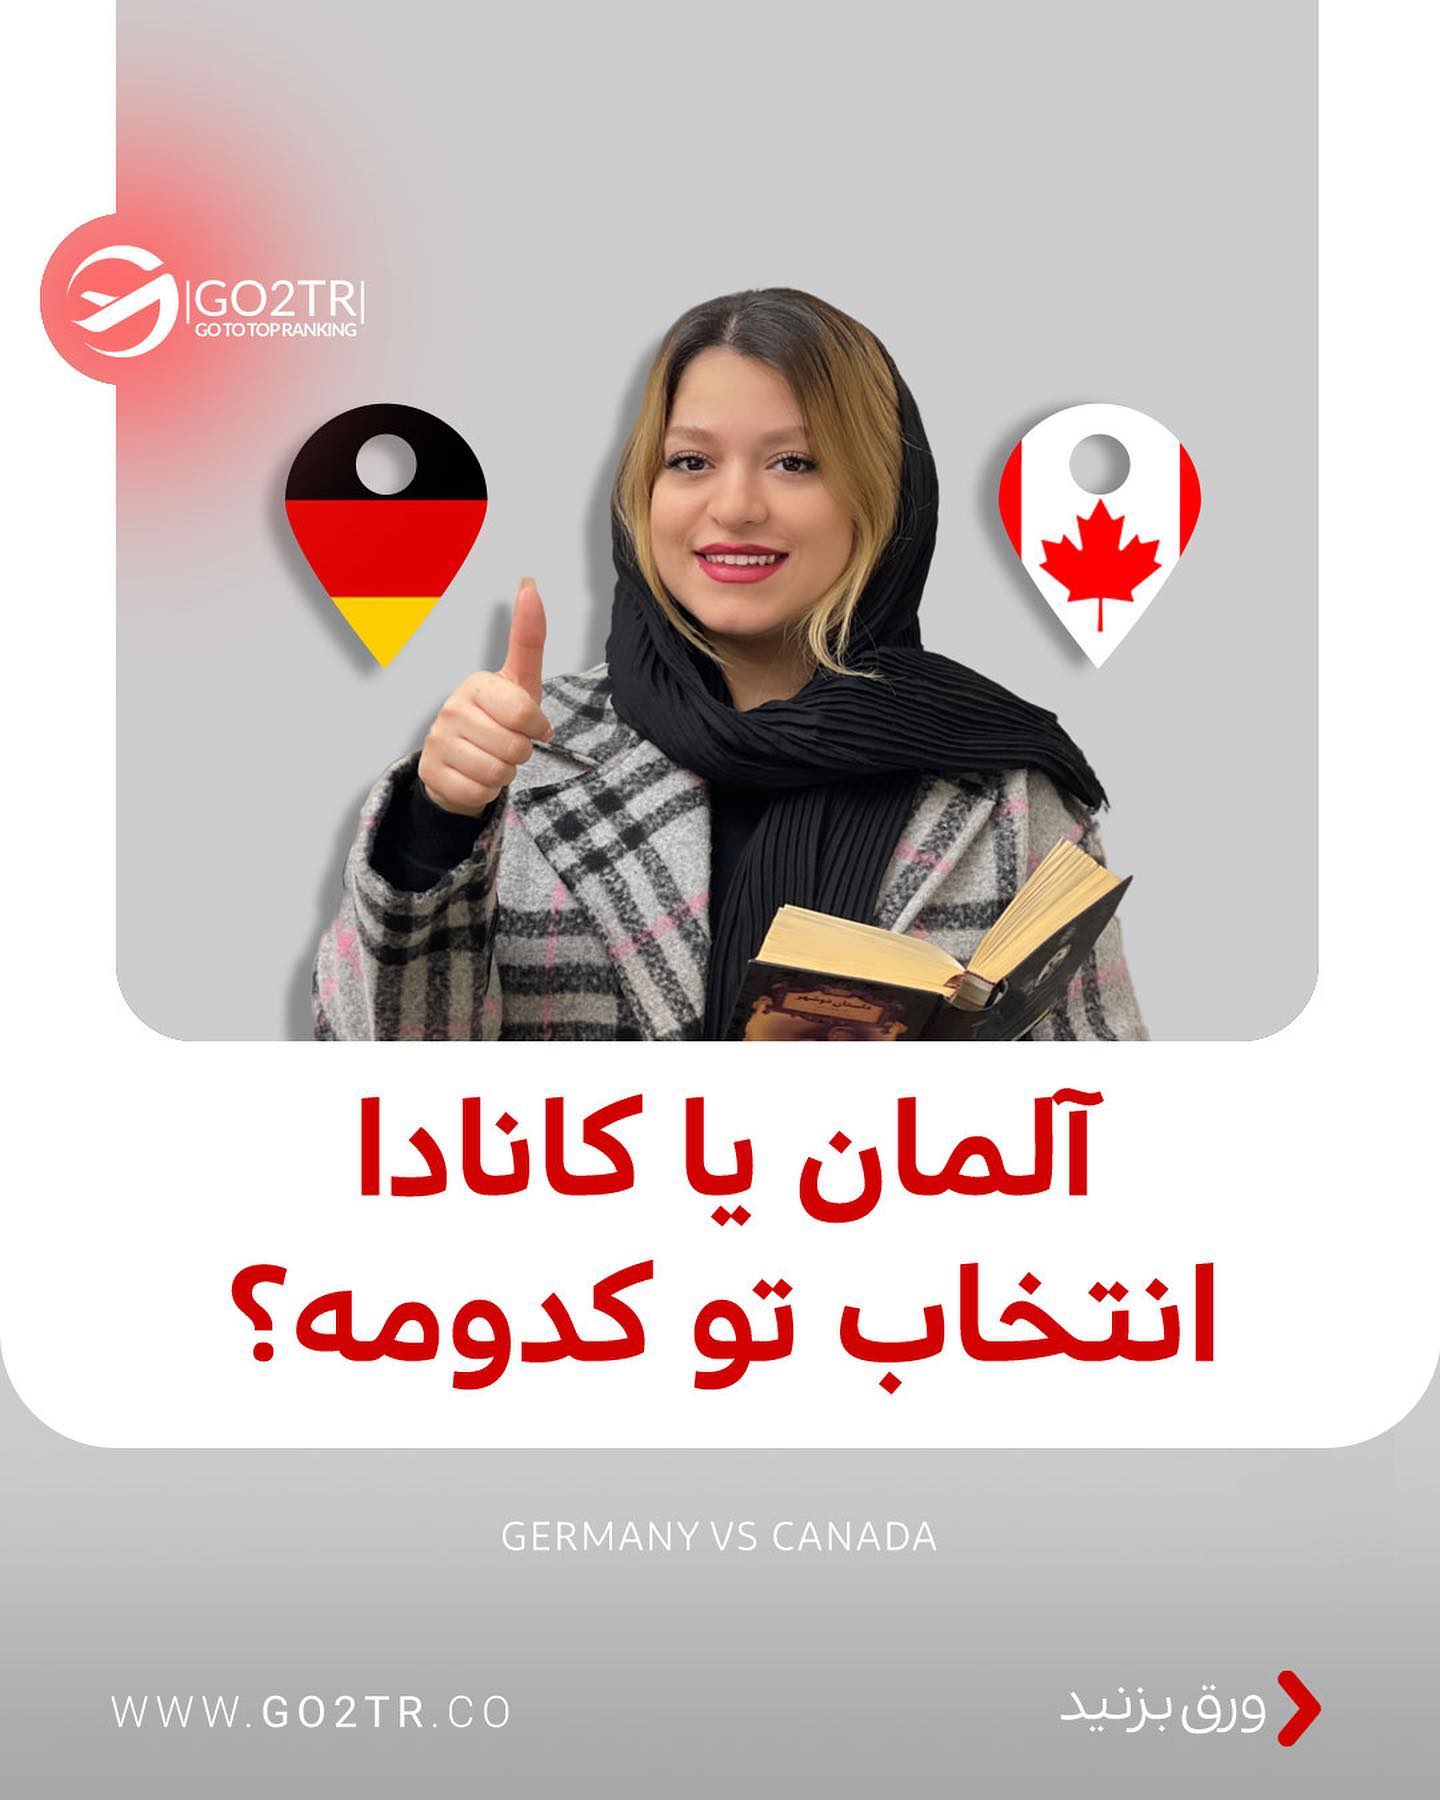 مقصد محبوب تو کدومه؟ کانادا یا آلمان؟ 🤩 . • ✅اگر موفق‌ به اخذ پذیرش و ویزا ا�